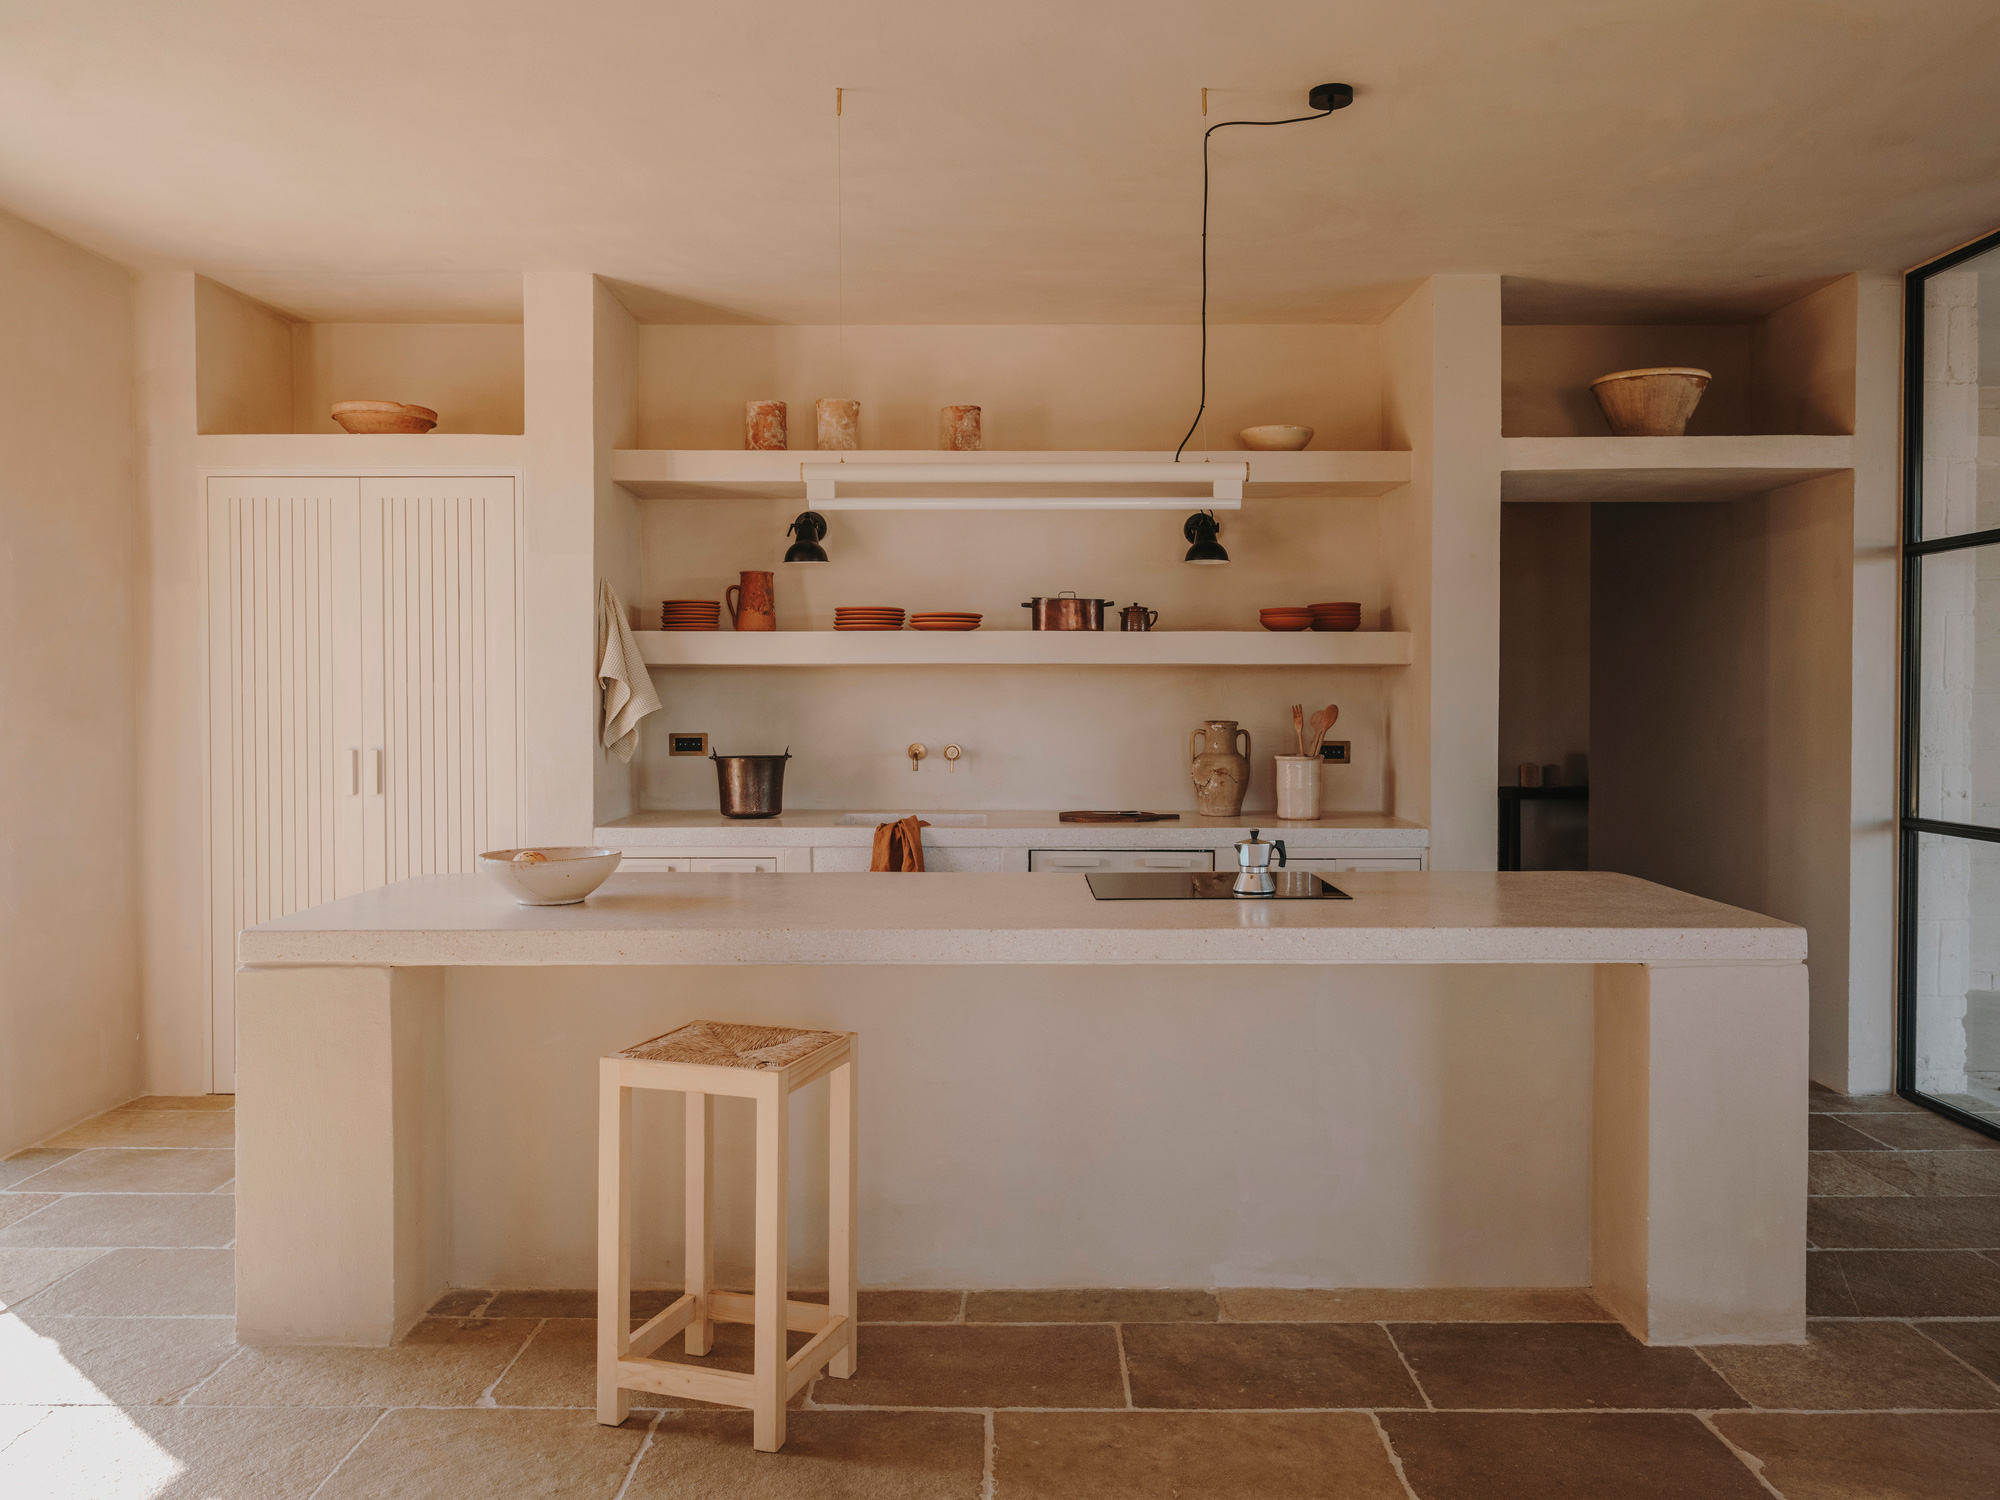 Casa Maiora, white kitchen